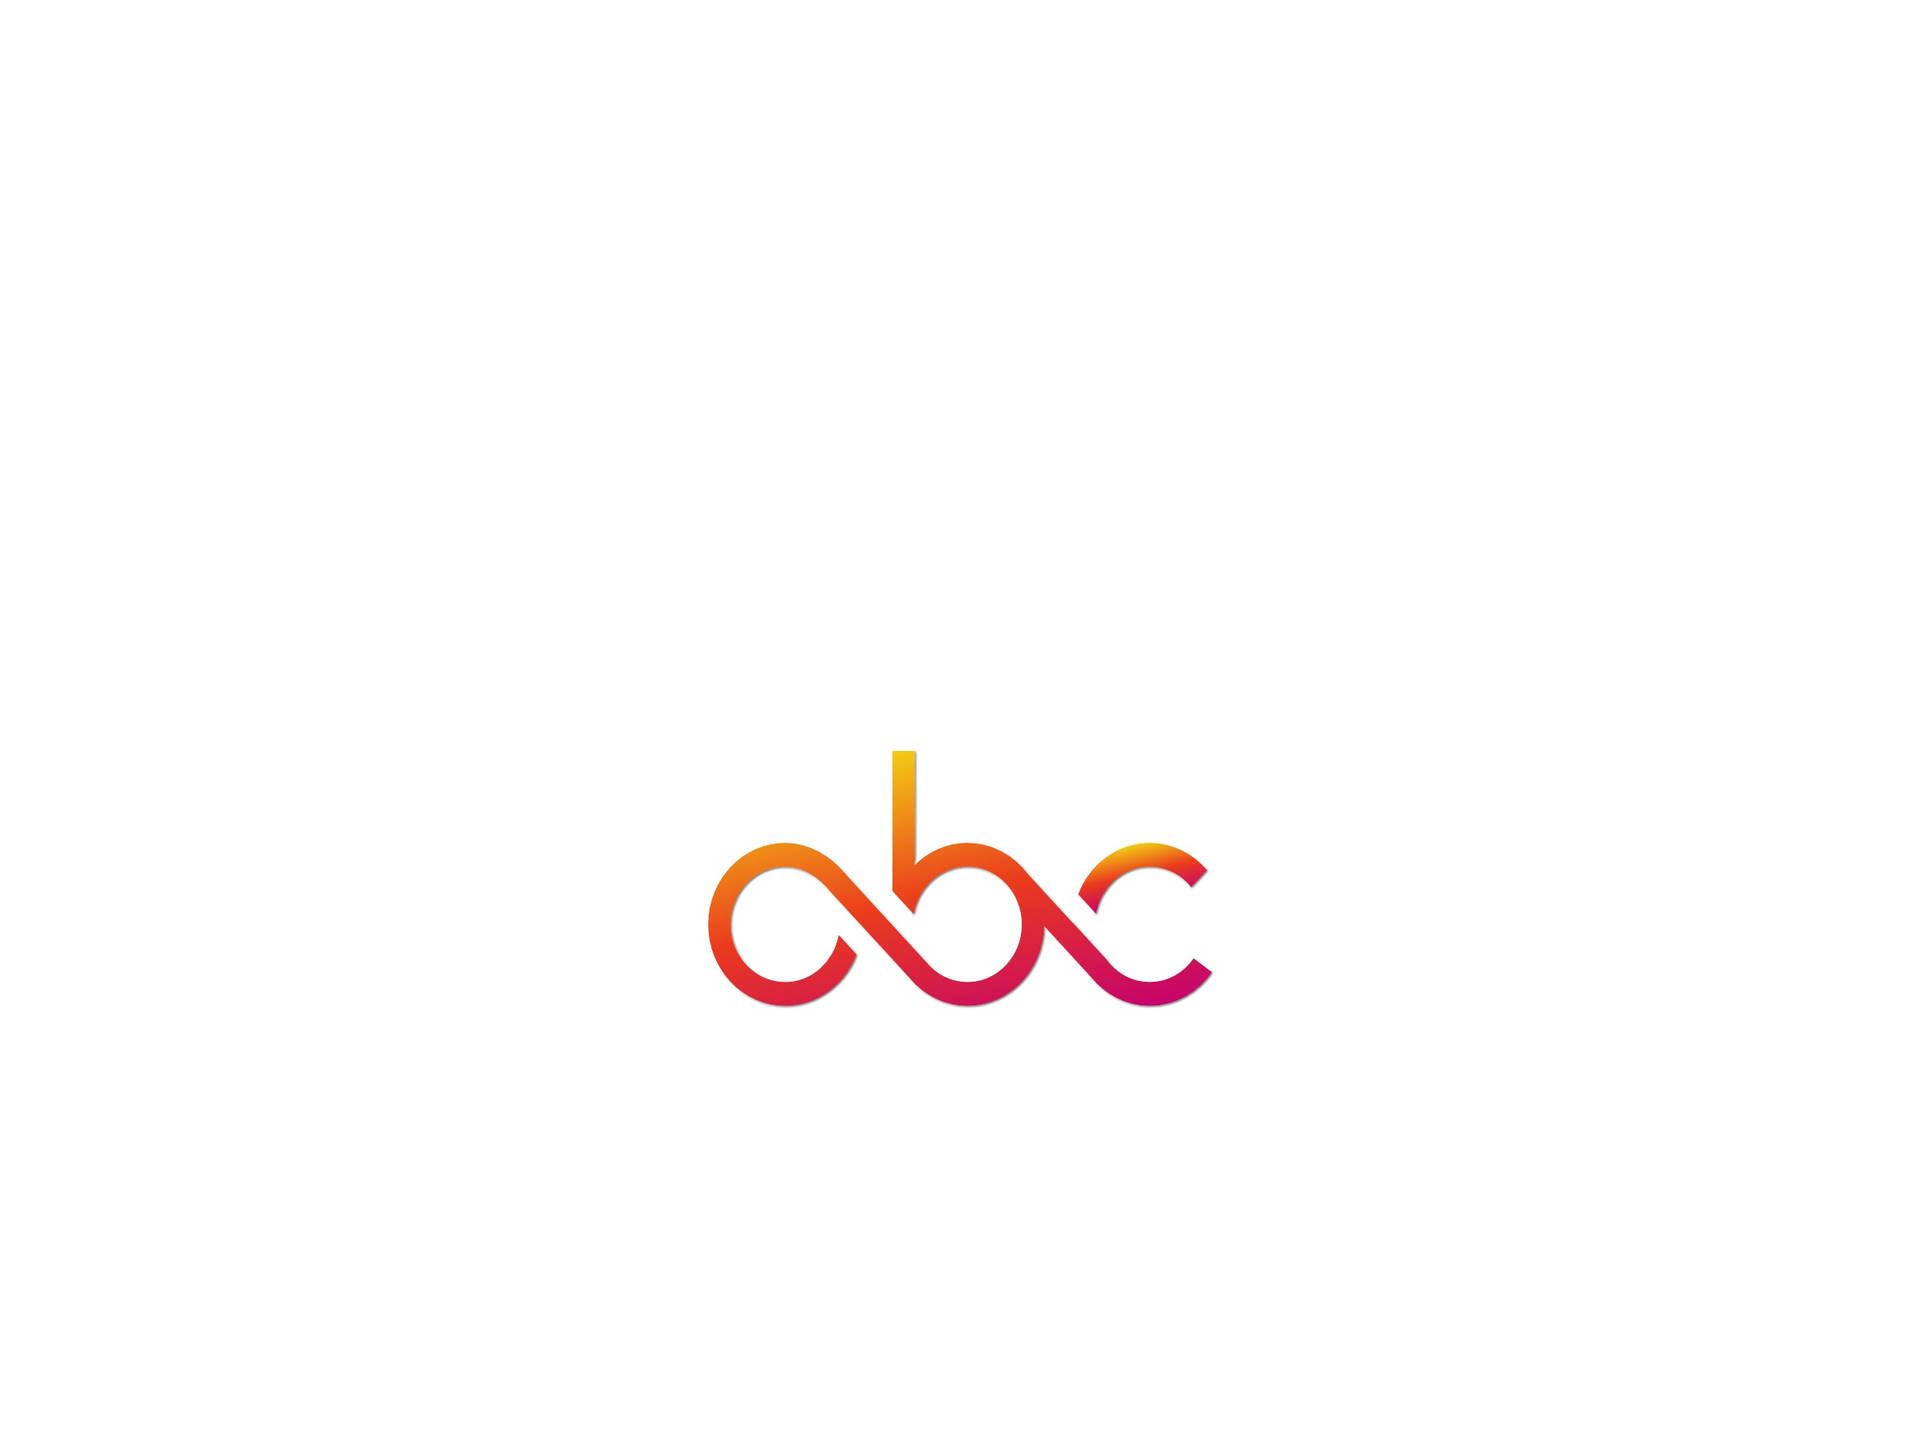 Abc Minimalist Stylised Letters